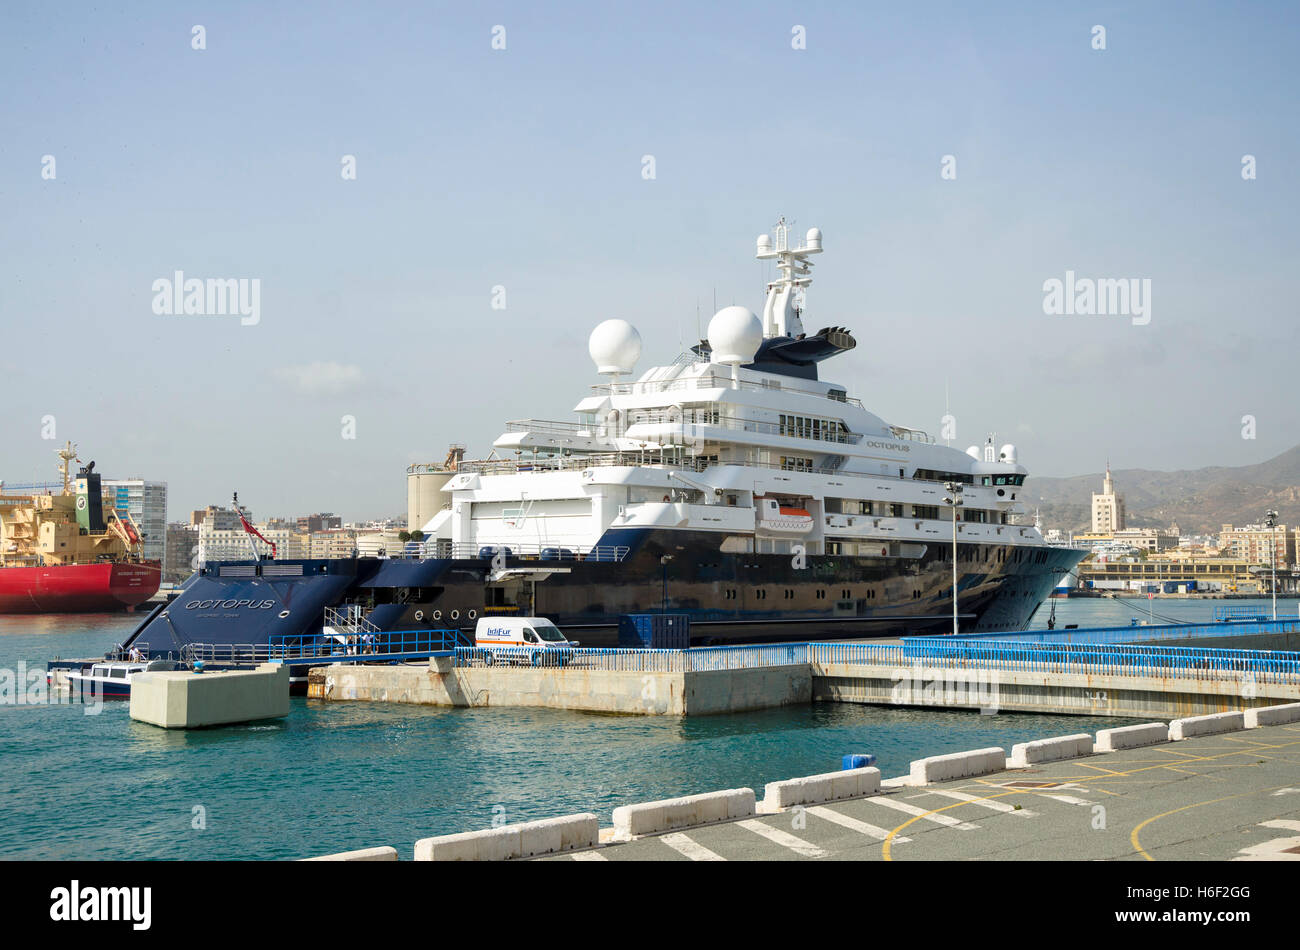 Mega Yacht Octopus, da Microsoft co-fondatore Paul Allen, porto di Malaga, Andalusia, Spagna Foto Stock